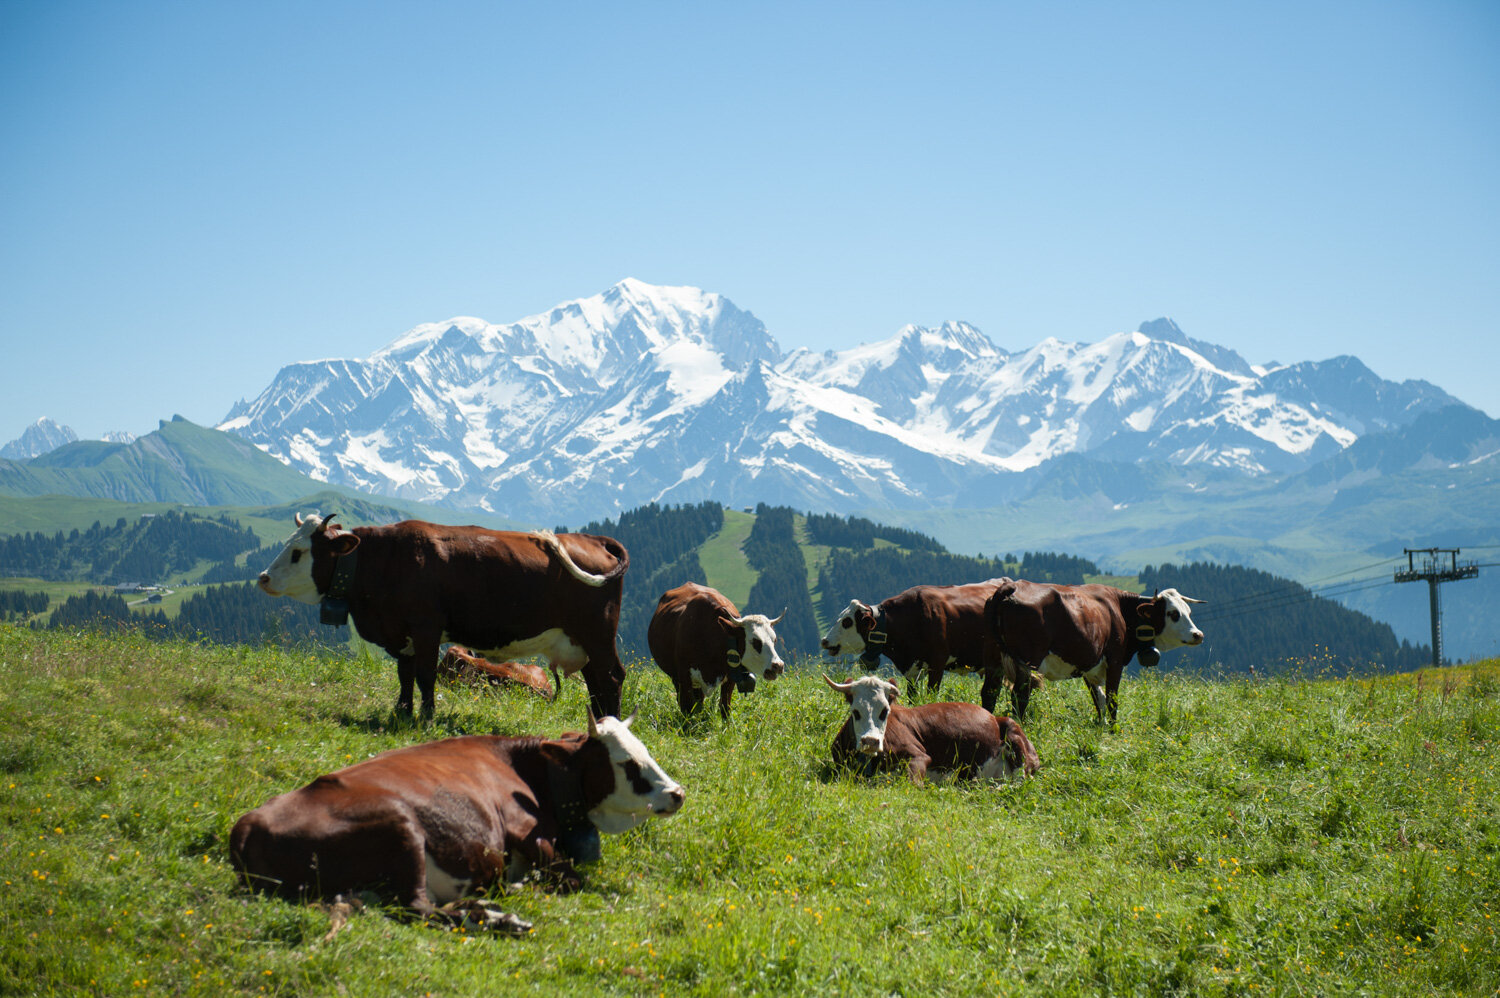  Le Mont Blanc, les montagnes et les vaches. Avec la CCAS. Les Saisies, France. Juillet 2016 // Mont Blanc, mountains and cows. With the CCAS. Les Saisies, France. July 2016. 